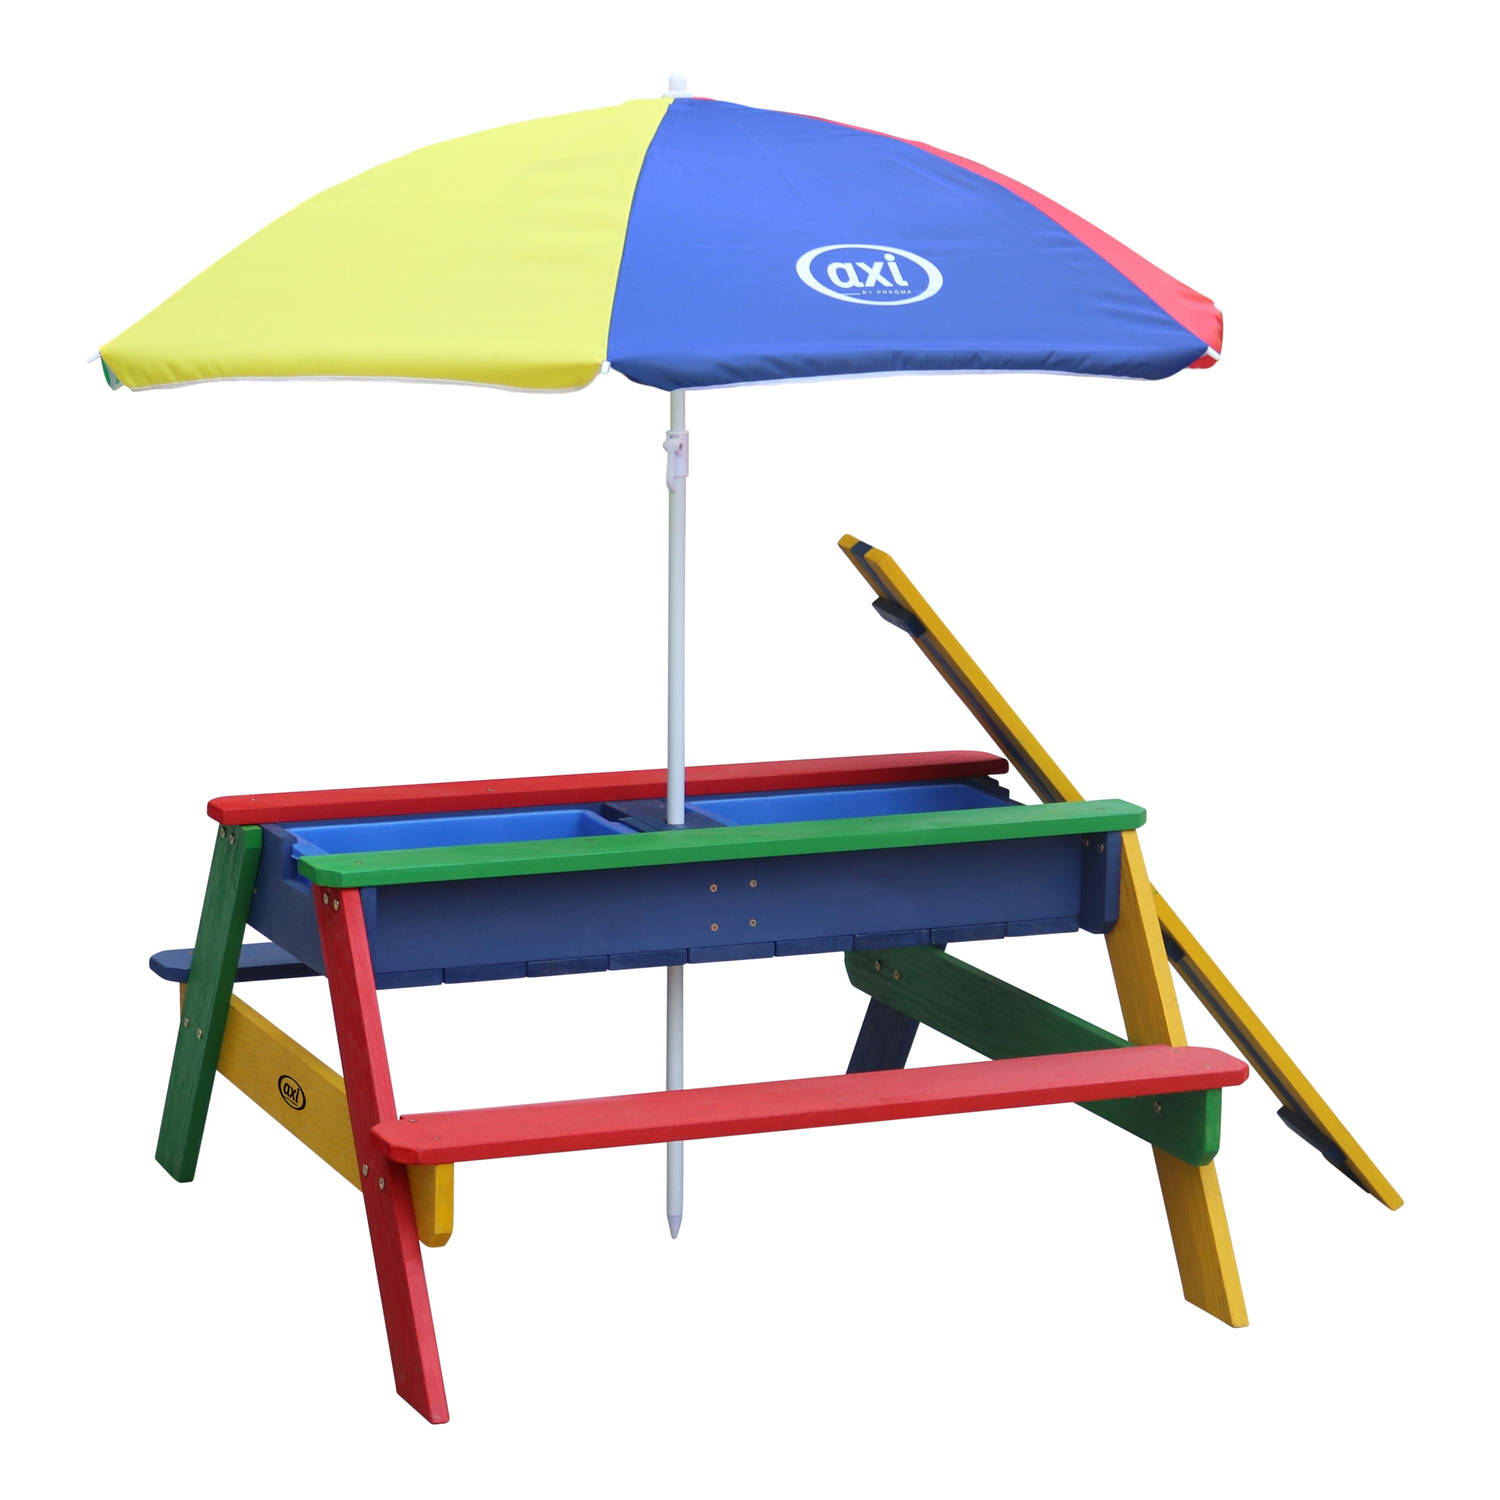 Axi Nick Picknicktafel-Zandtafel-Watertafel Voor Kinderen In Regenboog Kleuren Met Parasol Multifunc